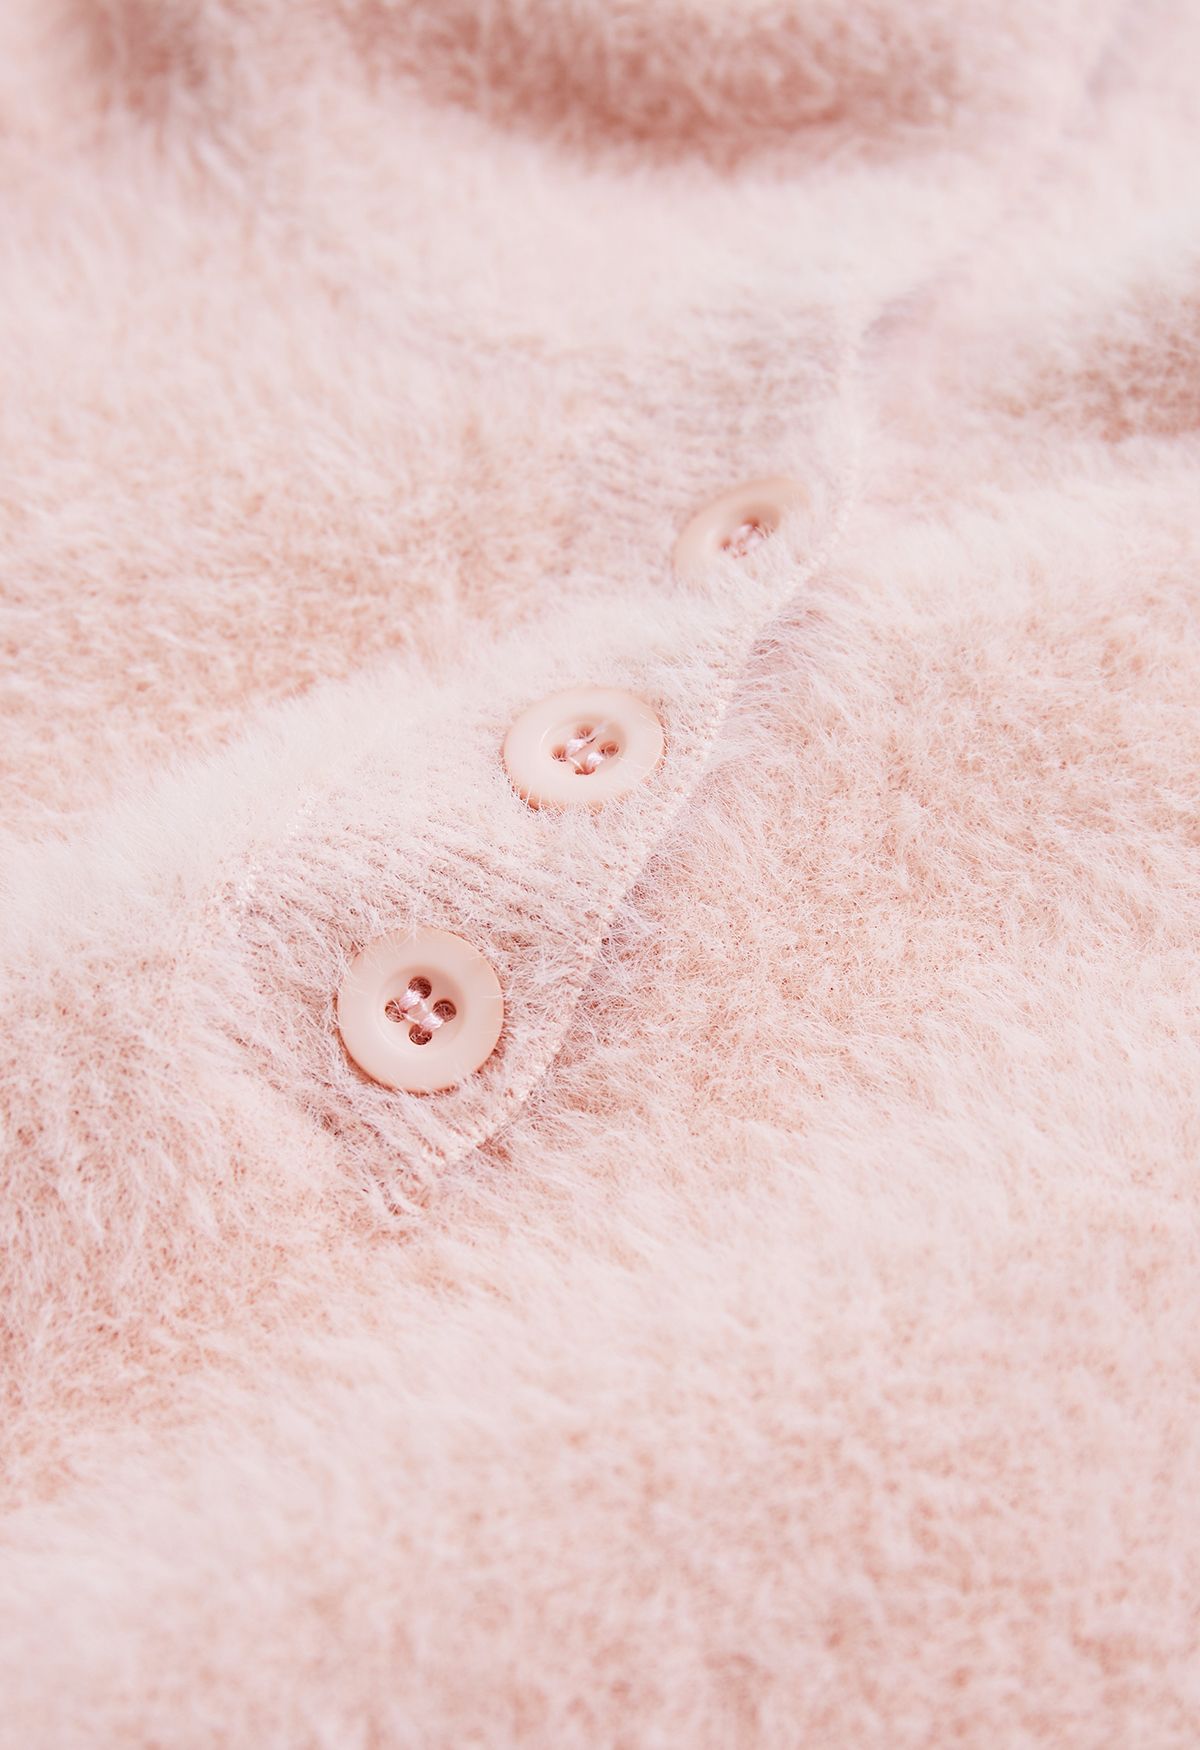 Kitty Cat Fuzzy Knit Hooded Sweater en rose pour enfants